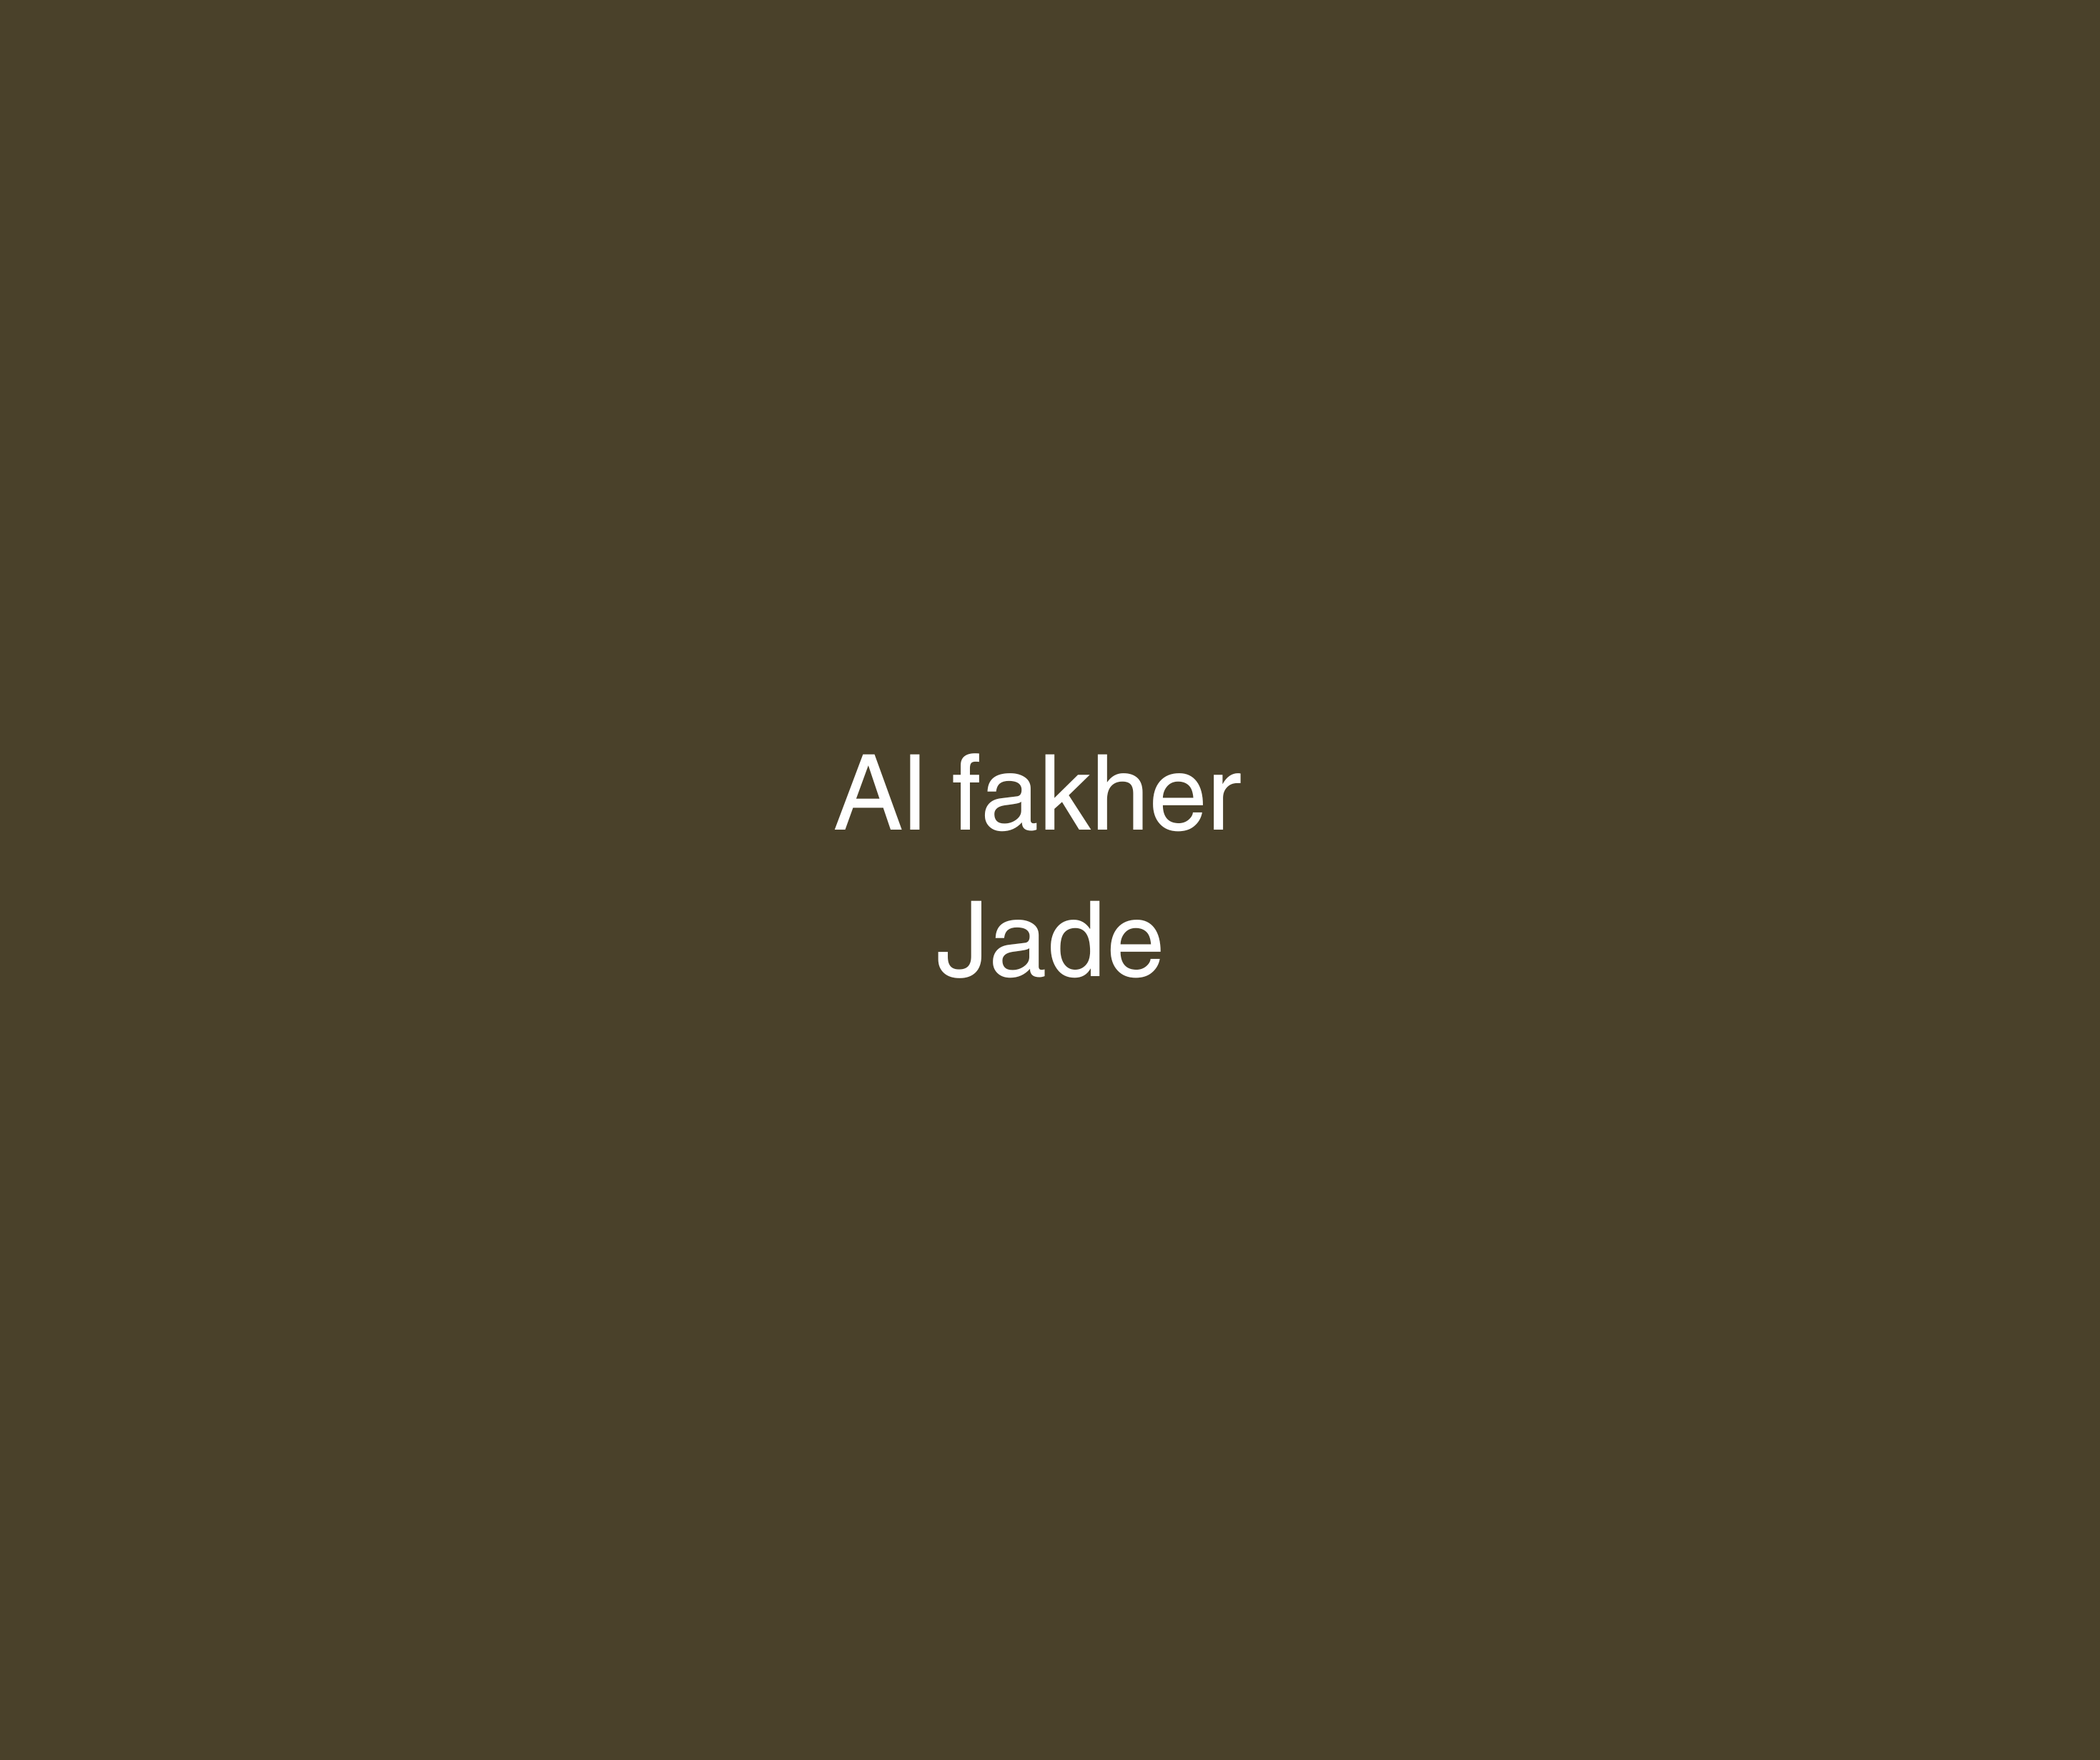 Al Fakher 200g - Jade (Vindrue) - Caesar Shisha